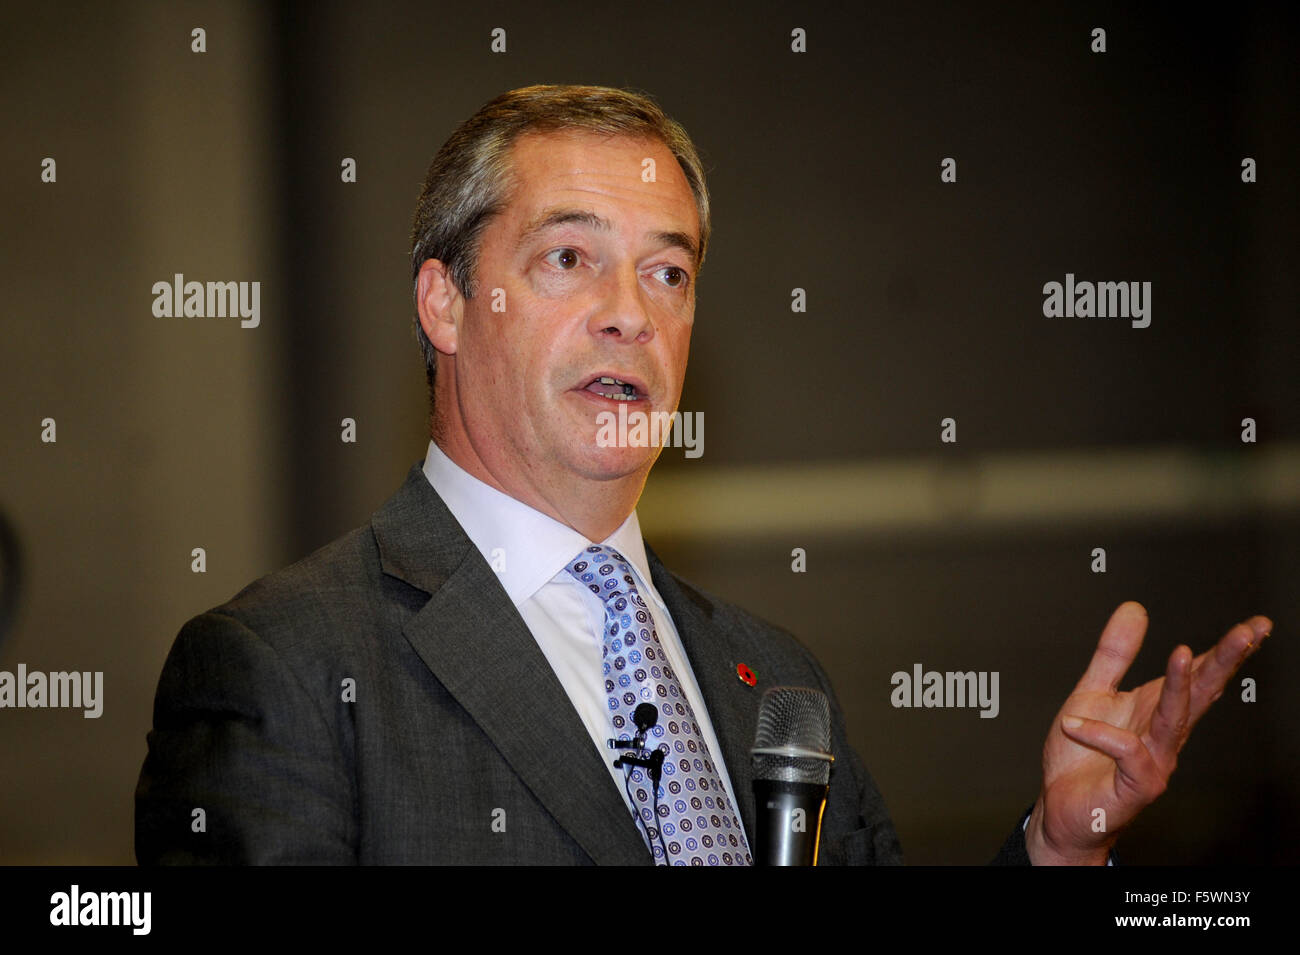 Il leader del partito per l'indipendenza del Regno Unito Nigel Farage MEP di scena a dire di no al Tour dell'UE che si è tenuto presso il GL1 Leisure Centre in Gloucester, Gloucestershire, UK.lunedì 9 novembre 2015. Foto di Gavin Crilly data 091115 da Gavin Crilly Fotografia Foto Stock